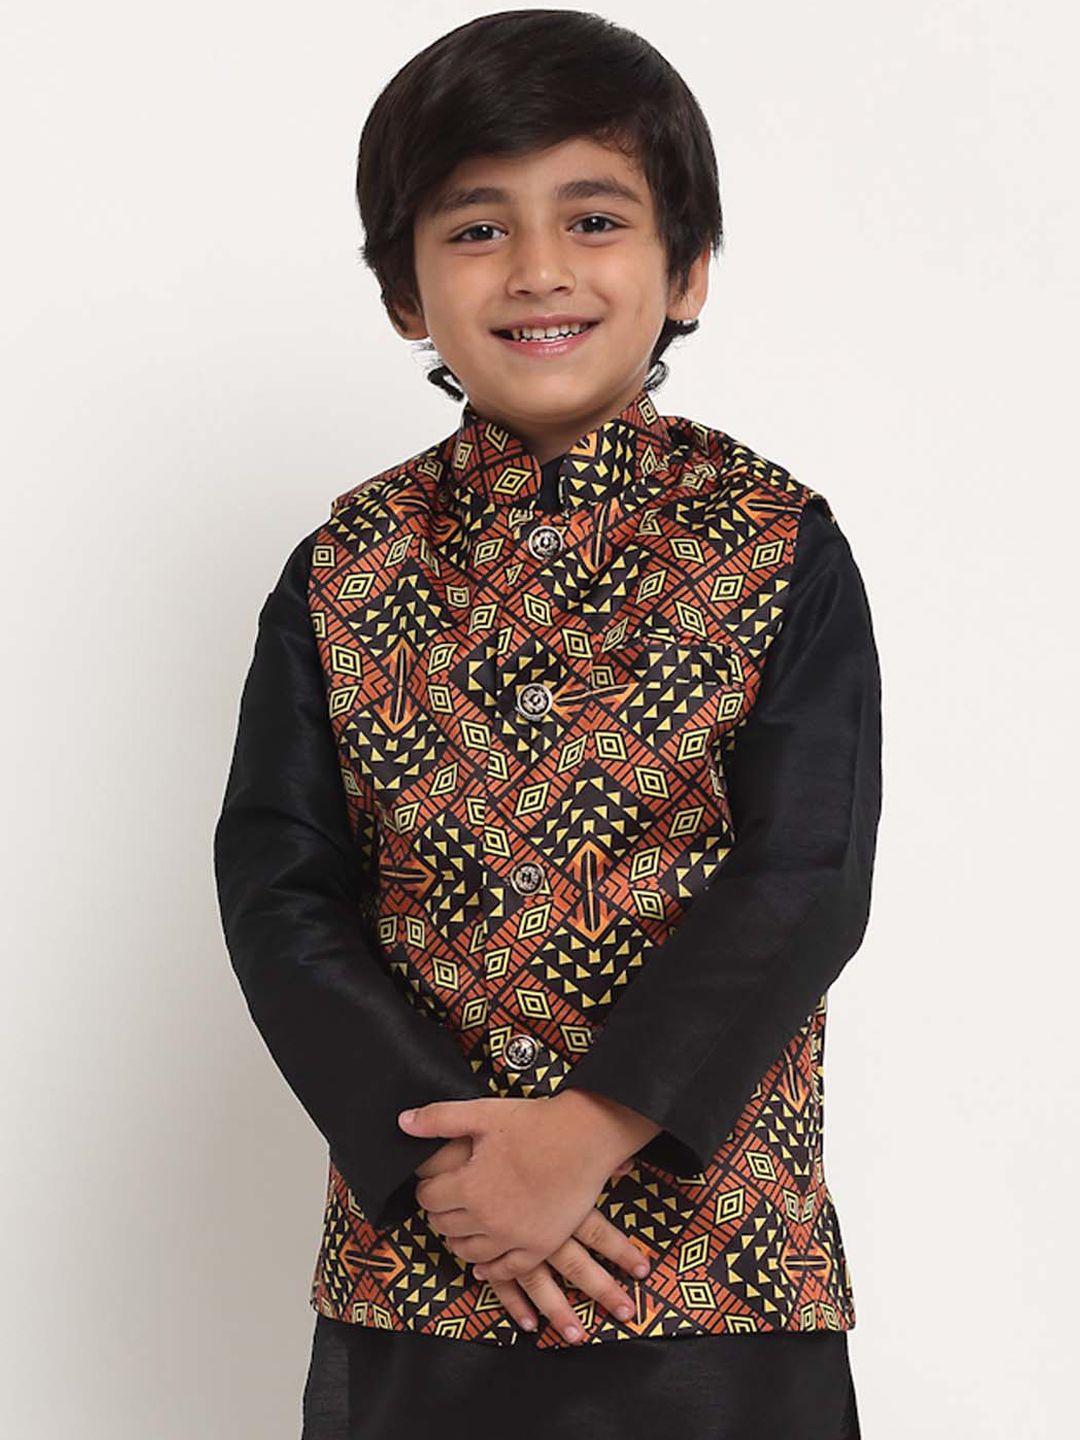 benstoke-boys-black-&-brown-printed-nehru-jacket